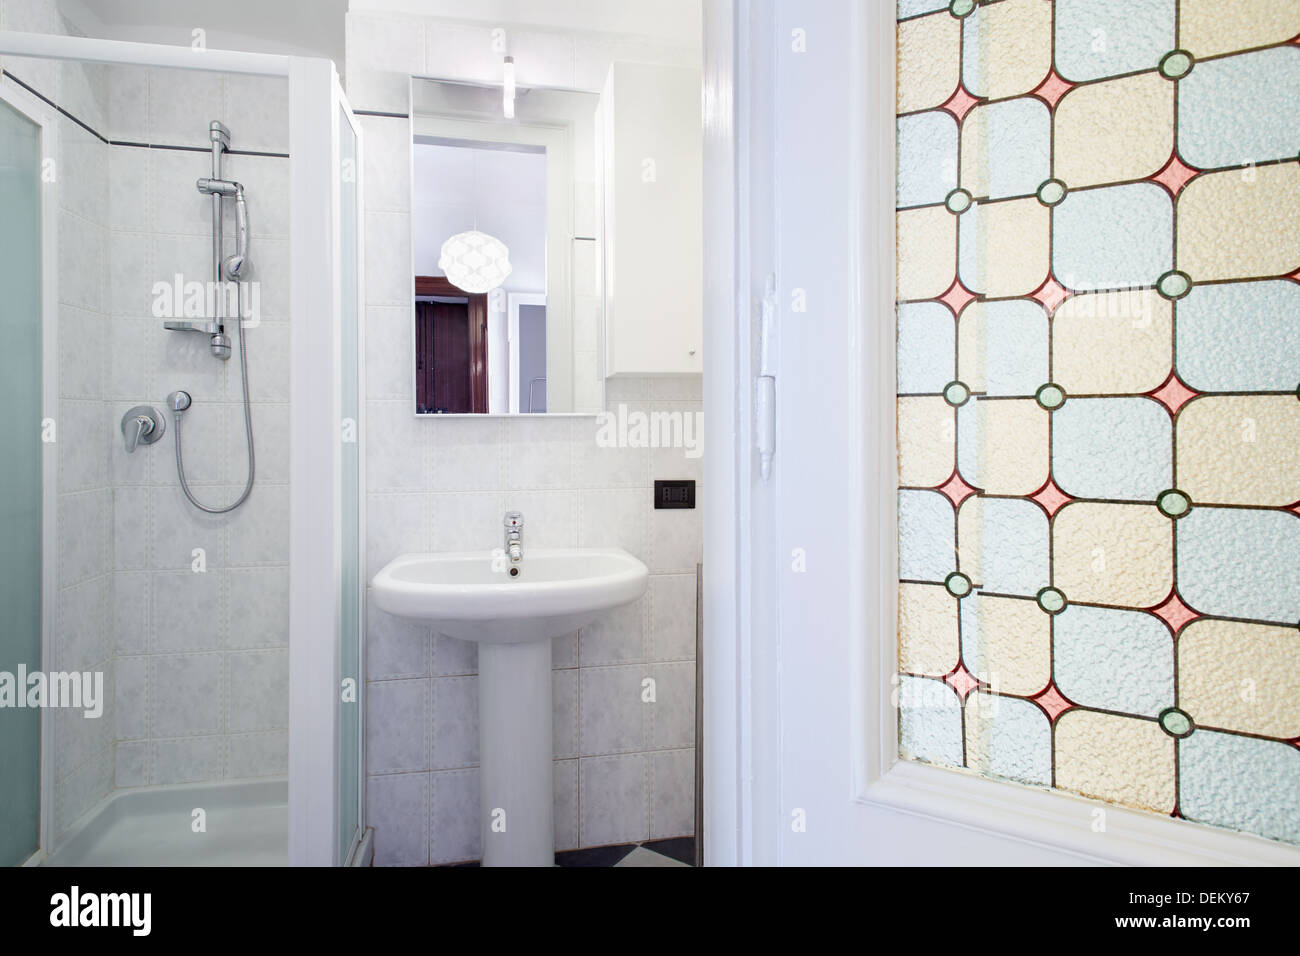 Ein kleines Bad mit weißen Fliesen und grünen Zierleisten an den Wänden, es  gibt einen Spiegel über dem Waschbecken Stockfotografie - Alamy